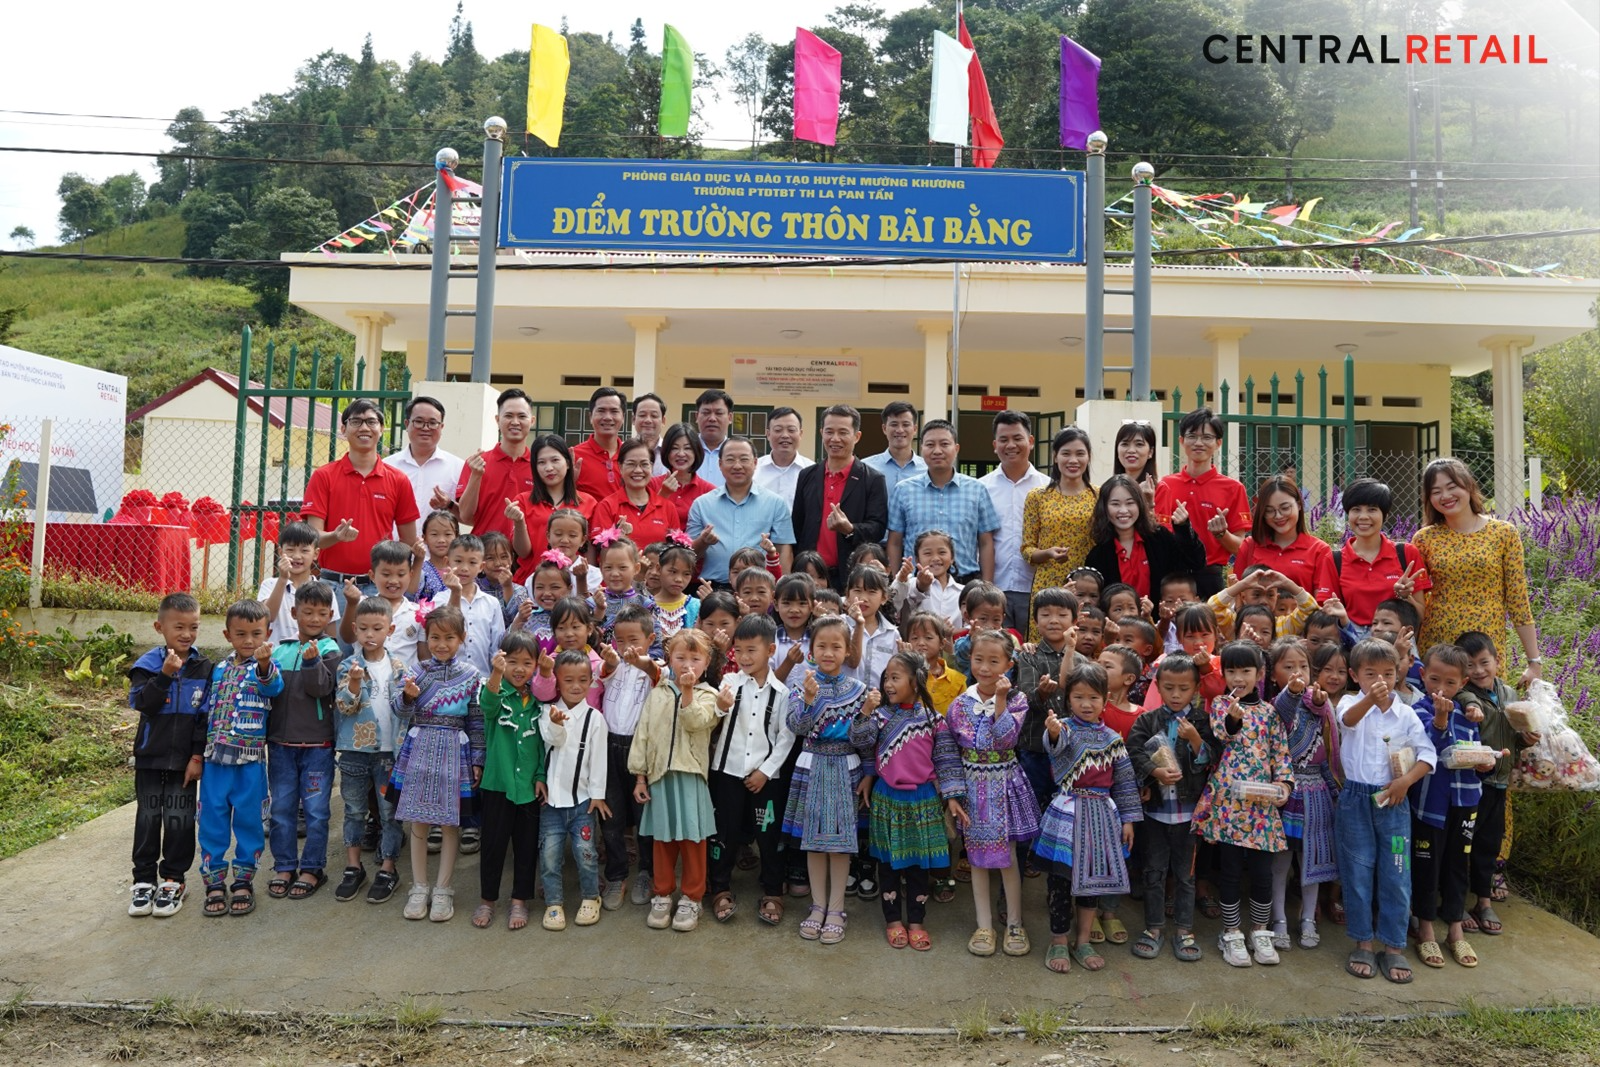 Central Retail Việt Nam tổ chức Lễ Bàn giao công trình nhà lớp học và nhà vệ sinh tại Trường Phổ thông Dân tộc Bán trú Tiểu học Xã La Pan Tẩn – Điểm trường Thôn Bãi Bằng